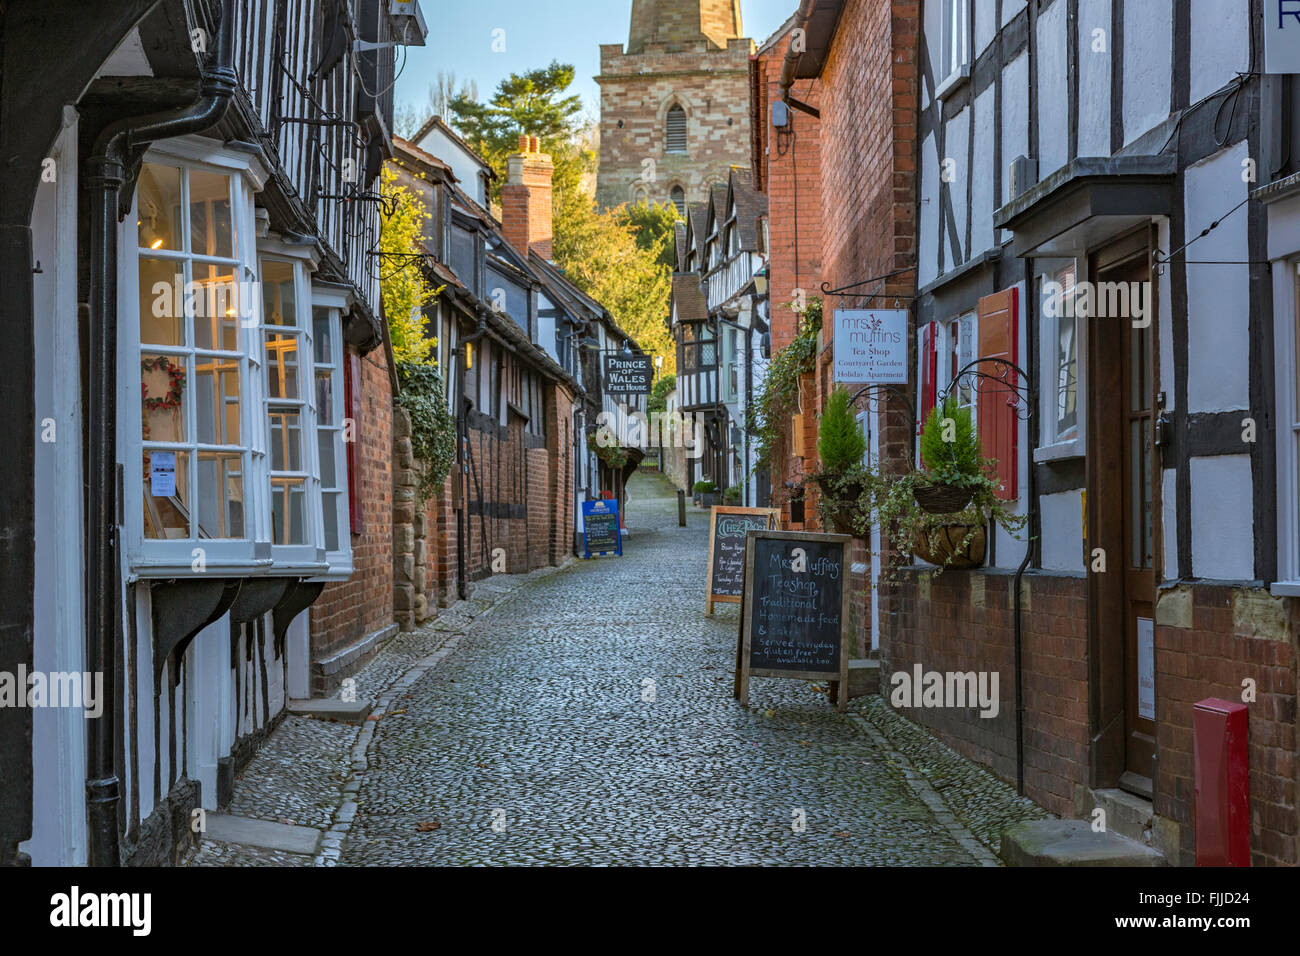 Church Lane en la histórica ciudad rural de Ledbury, Herefordshire, Inglaterra, Reino Unido. Foto de stock